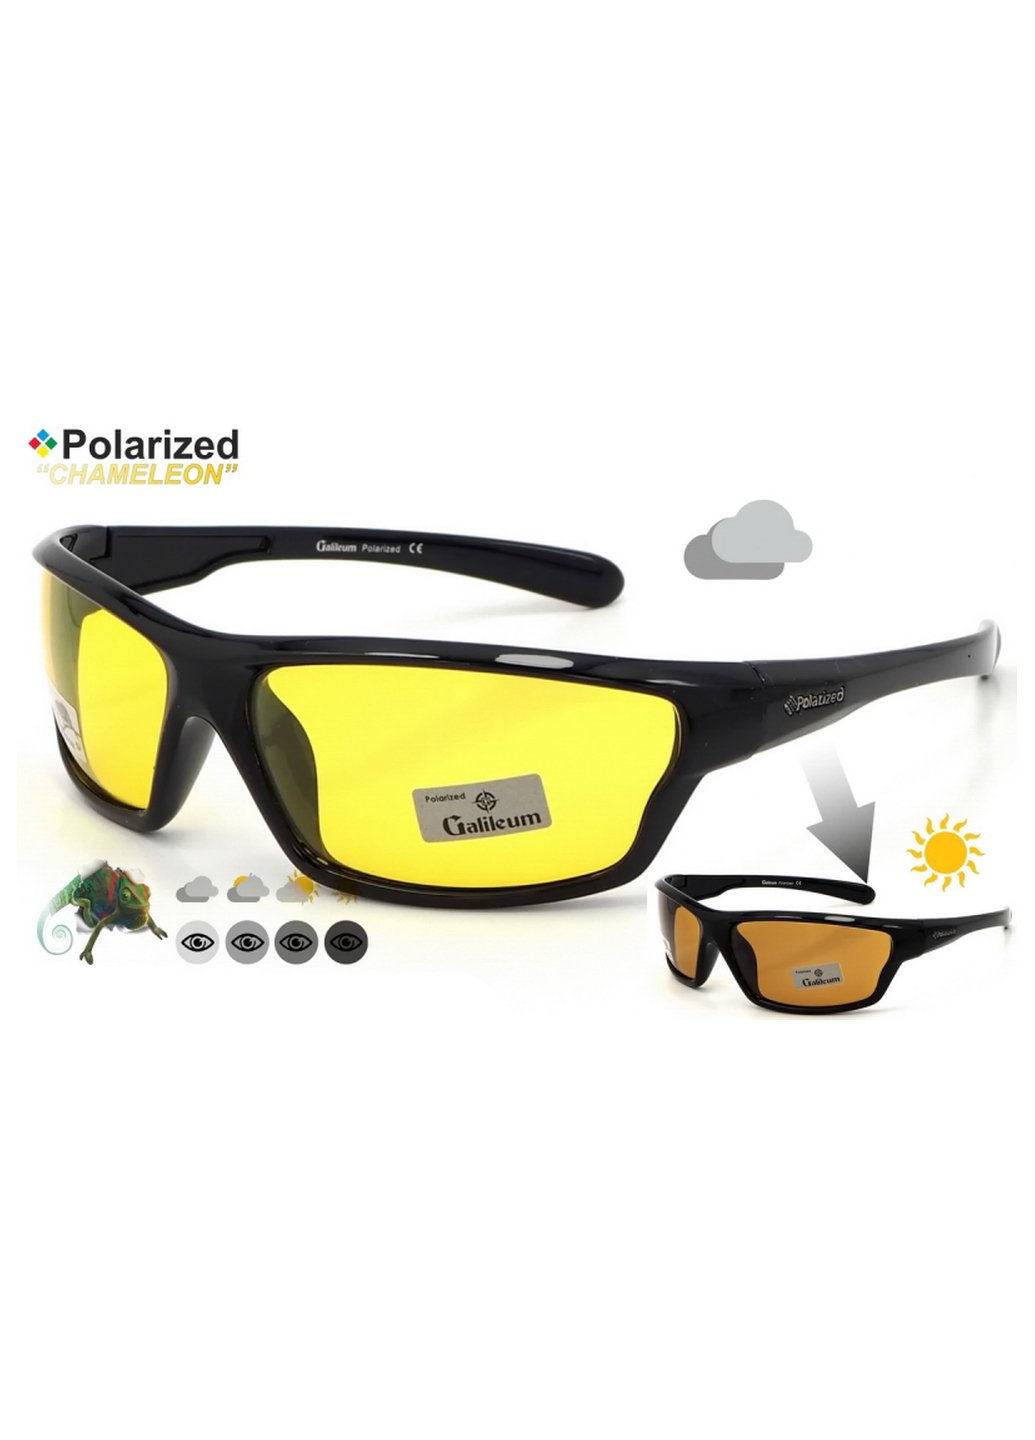 Купить Спортивные очки с поляризацией и фотохромными линзами Galileum 125009 в интернет-магазине